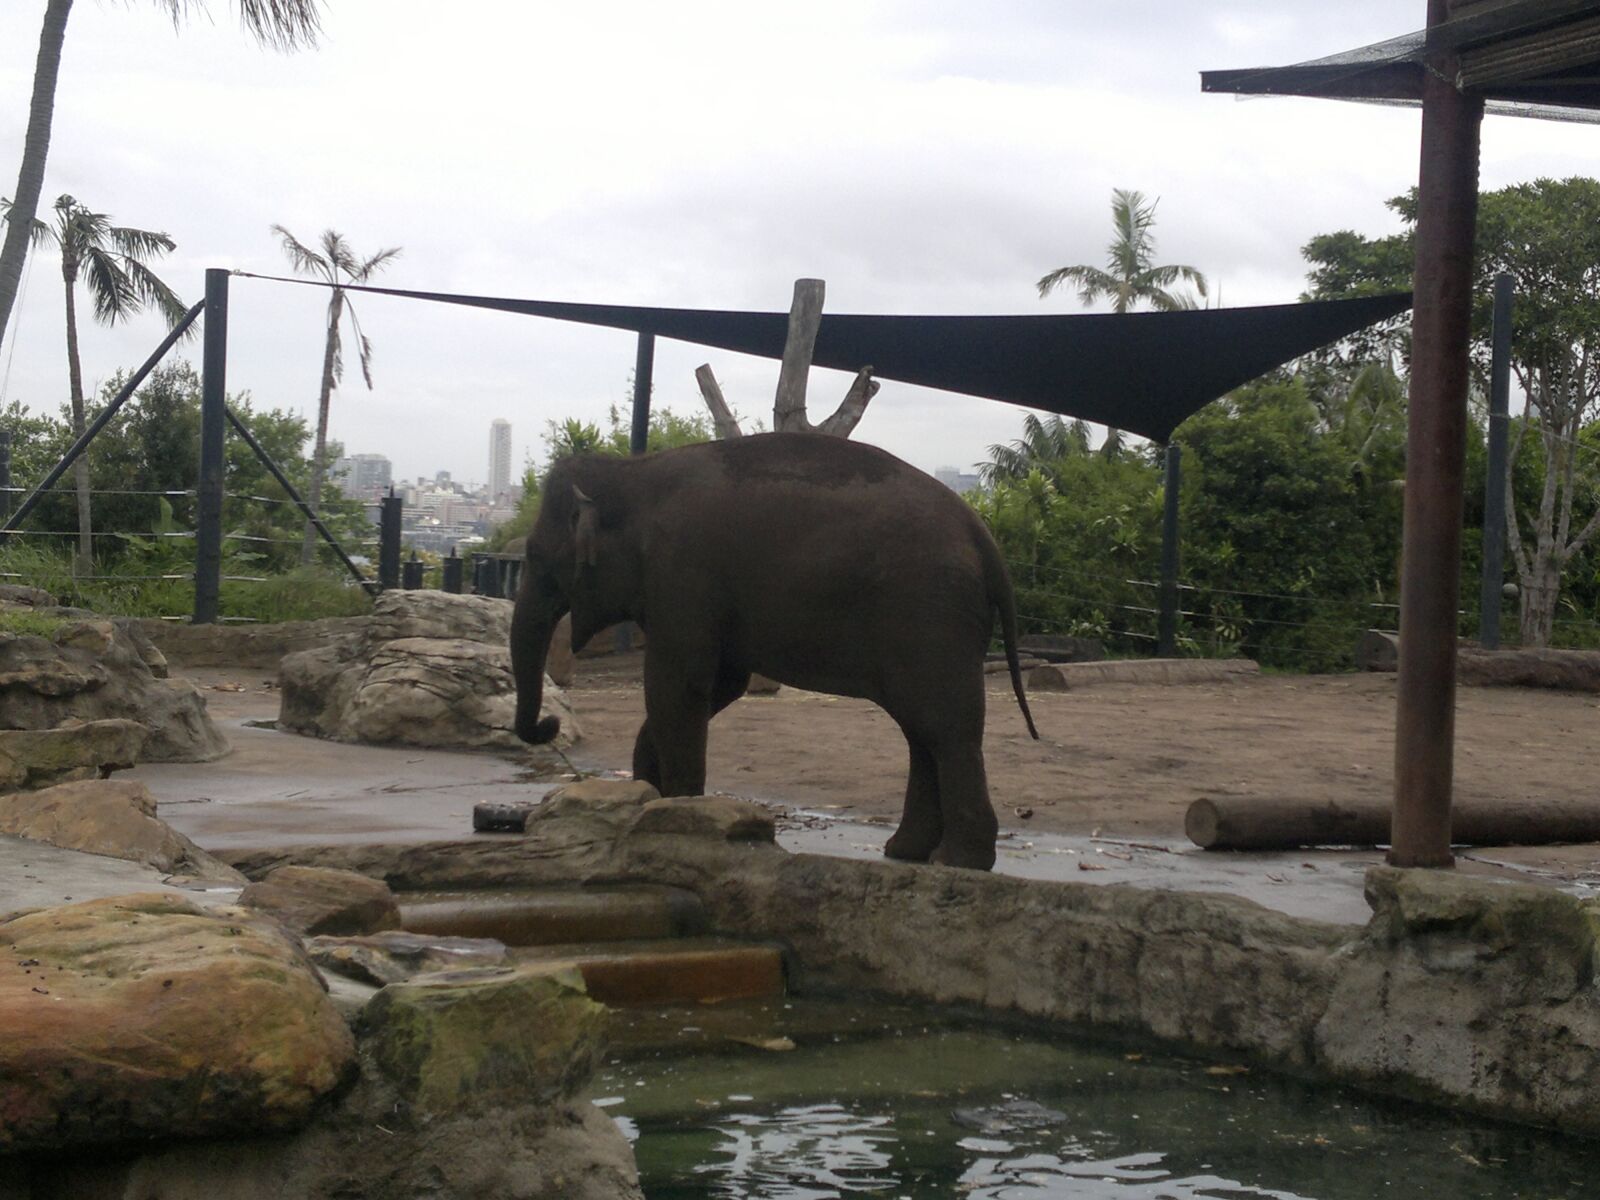 Nokia N8-00 sample photo. Elephant, toronga, sydney photography